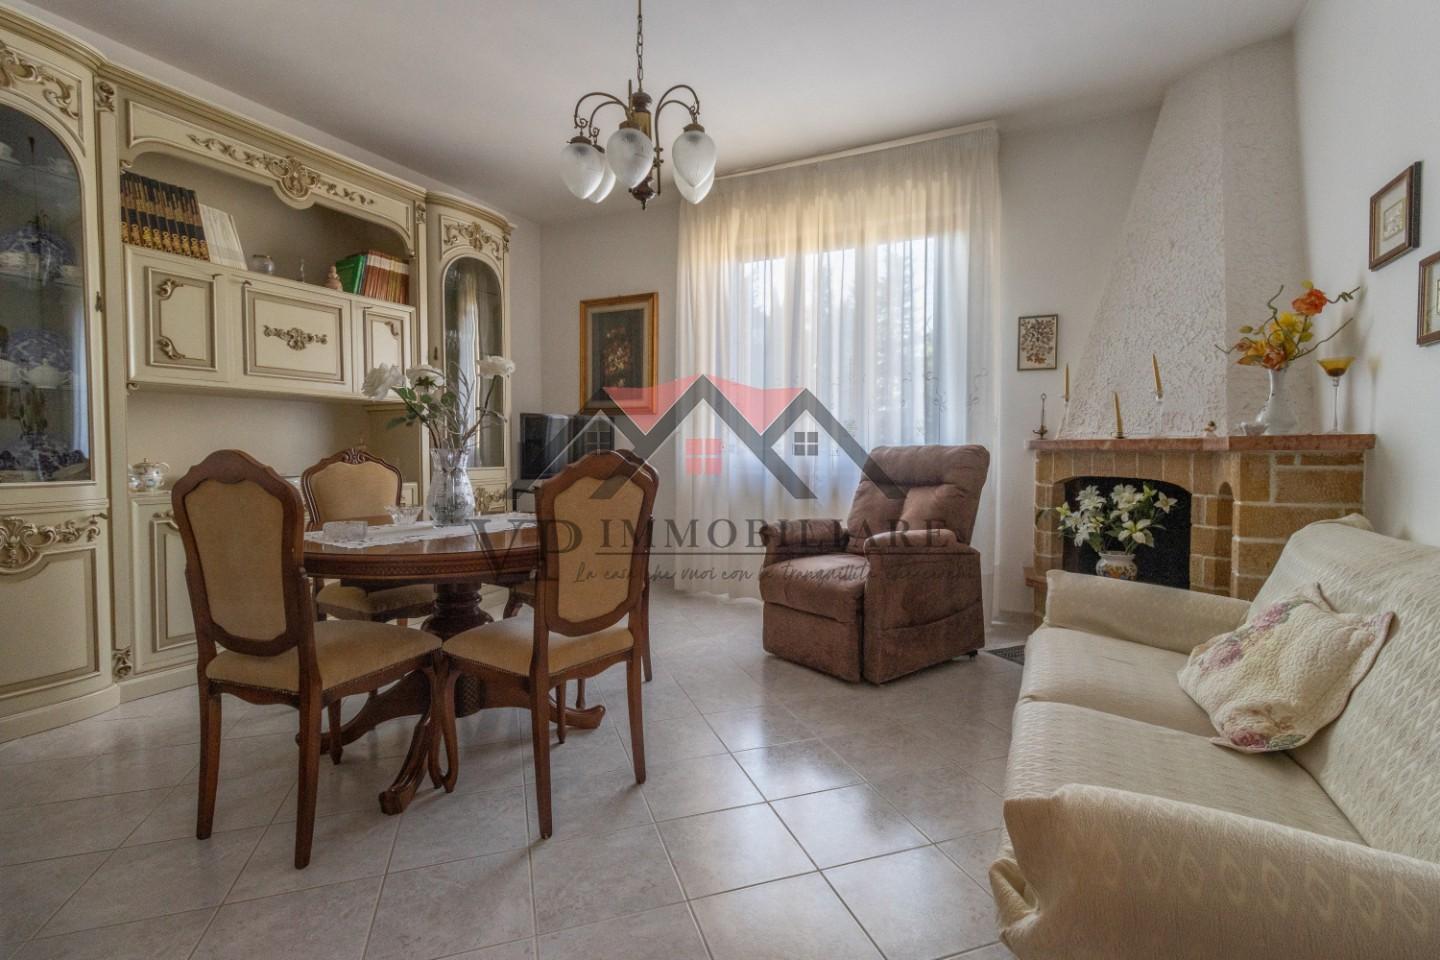 Appartamento in vendita a Pomarance, 5 locali, prezzo € 85.000 | PortaleAgenzieImmobiliari.it